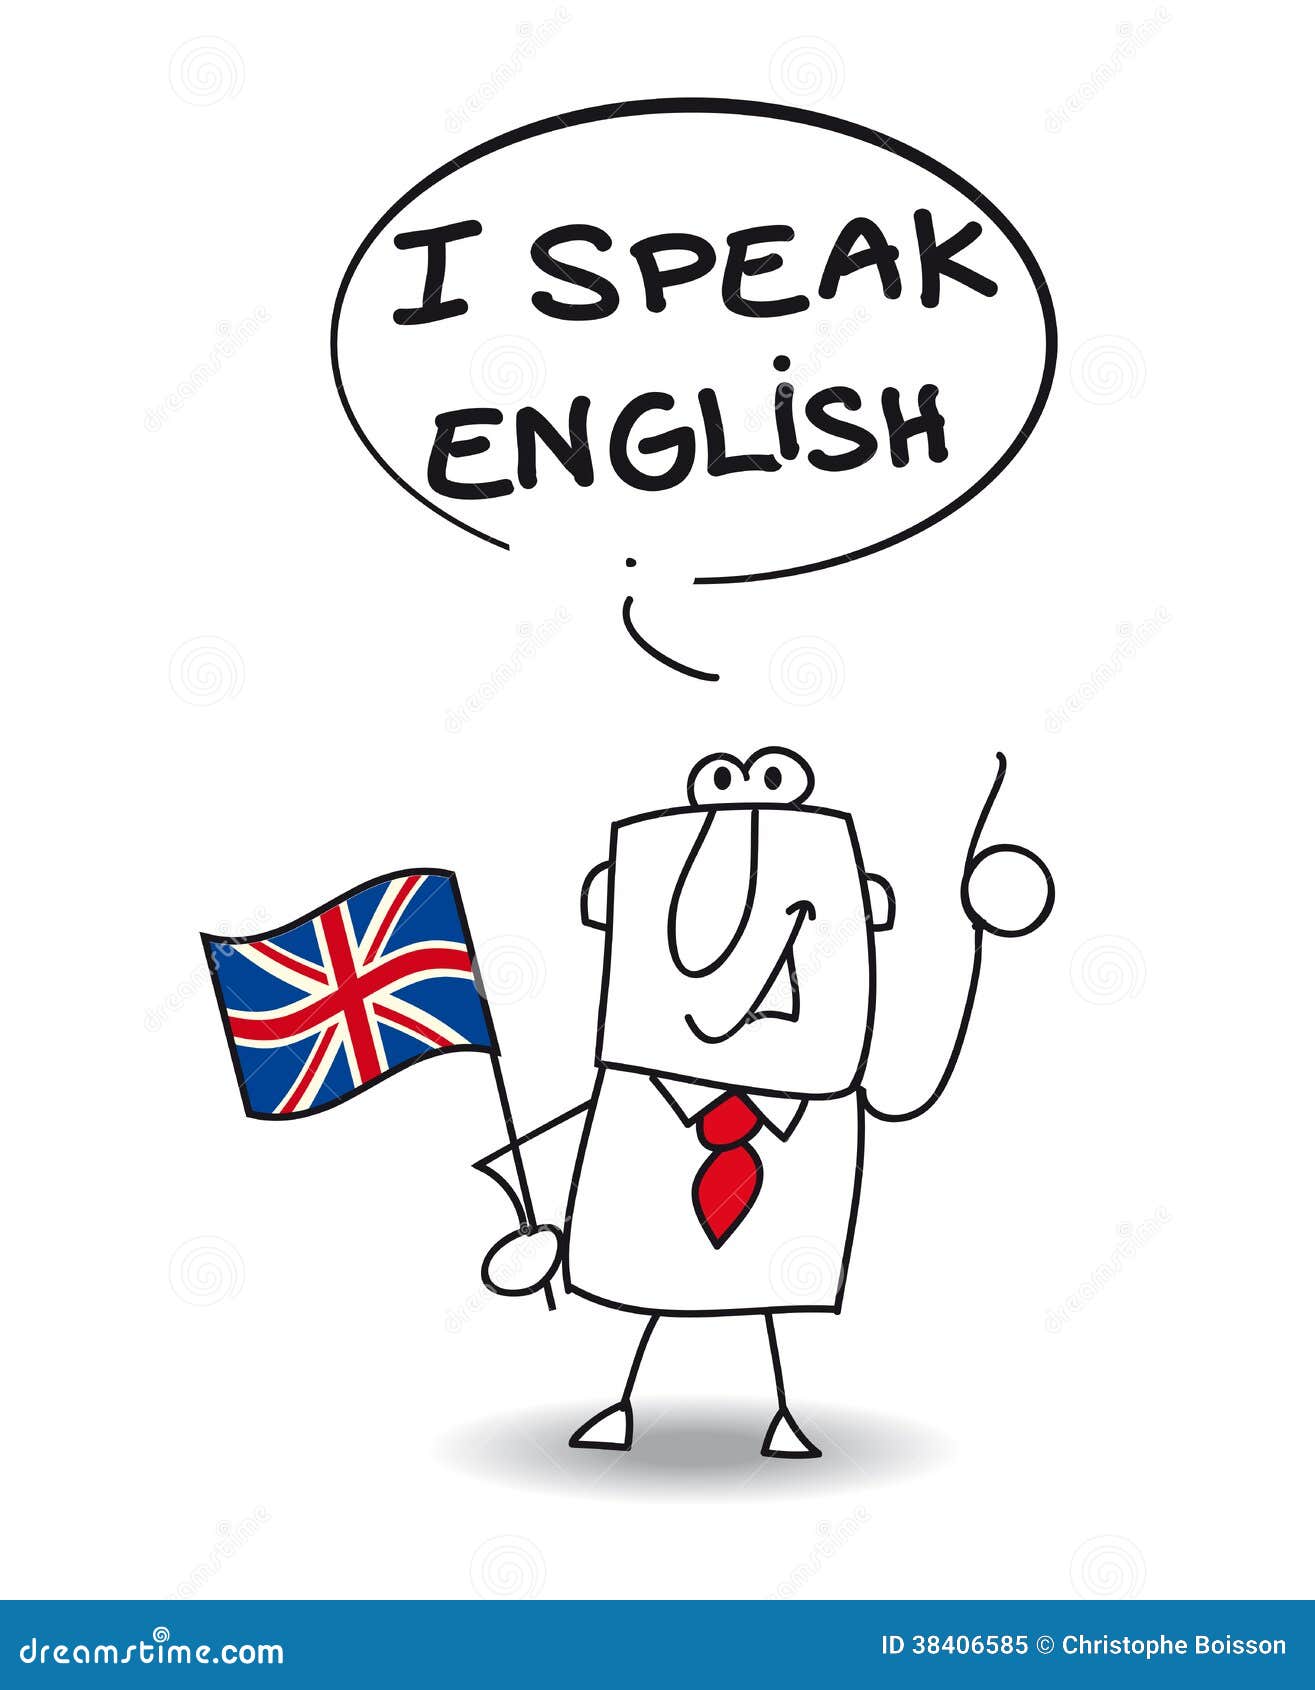 Ай спик инглиш. Я говорю на английском языке. Говорим по-английски. Speak English картинка. Знаю английский язык.